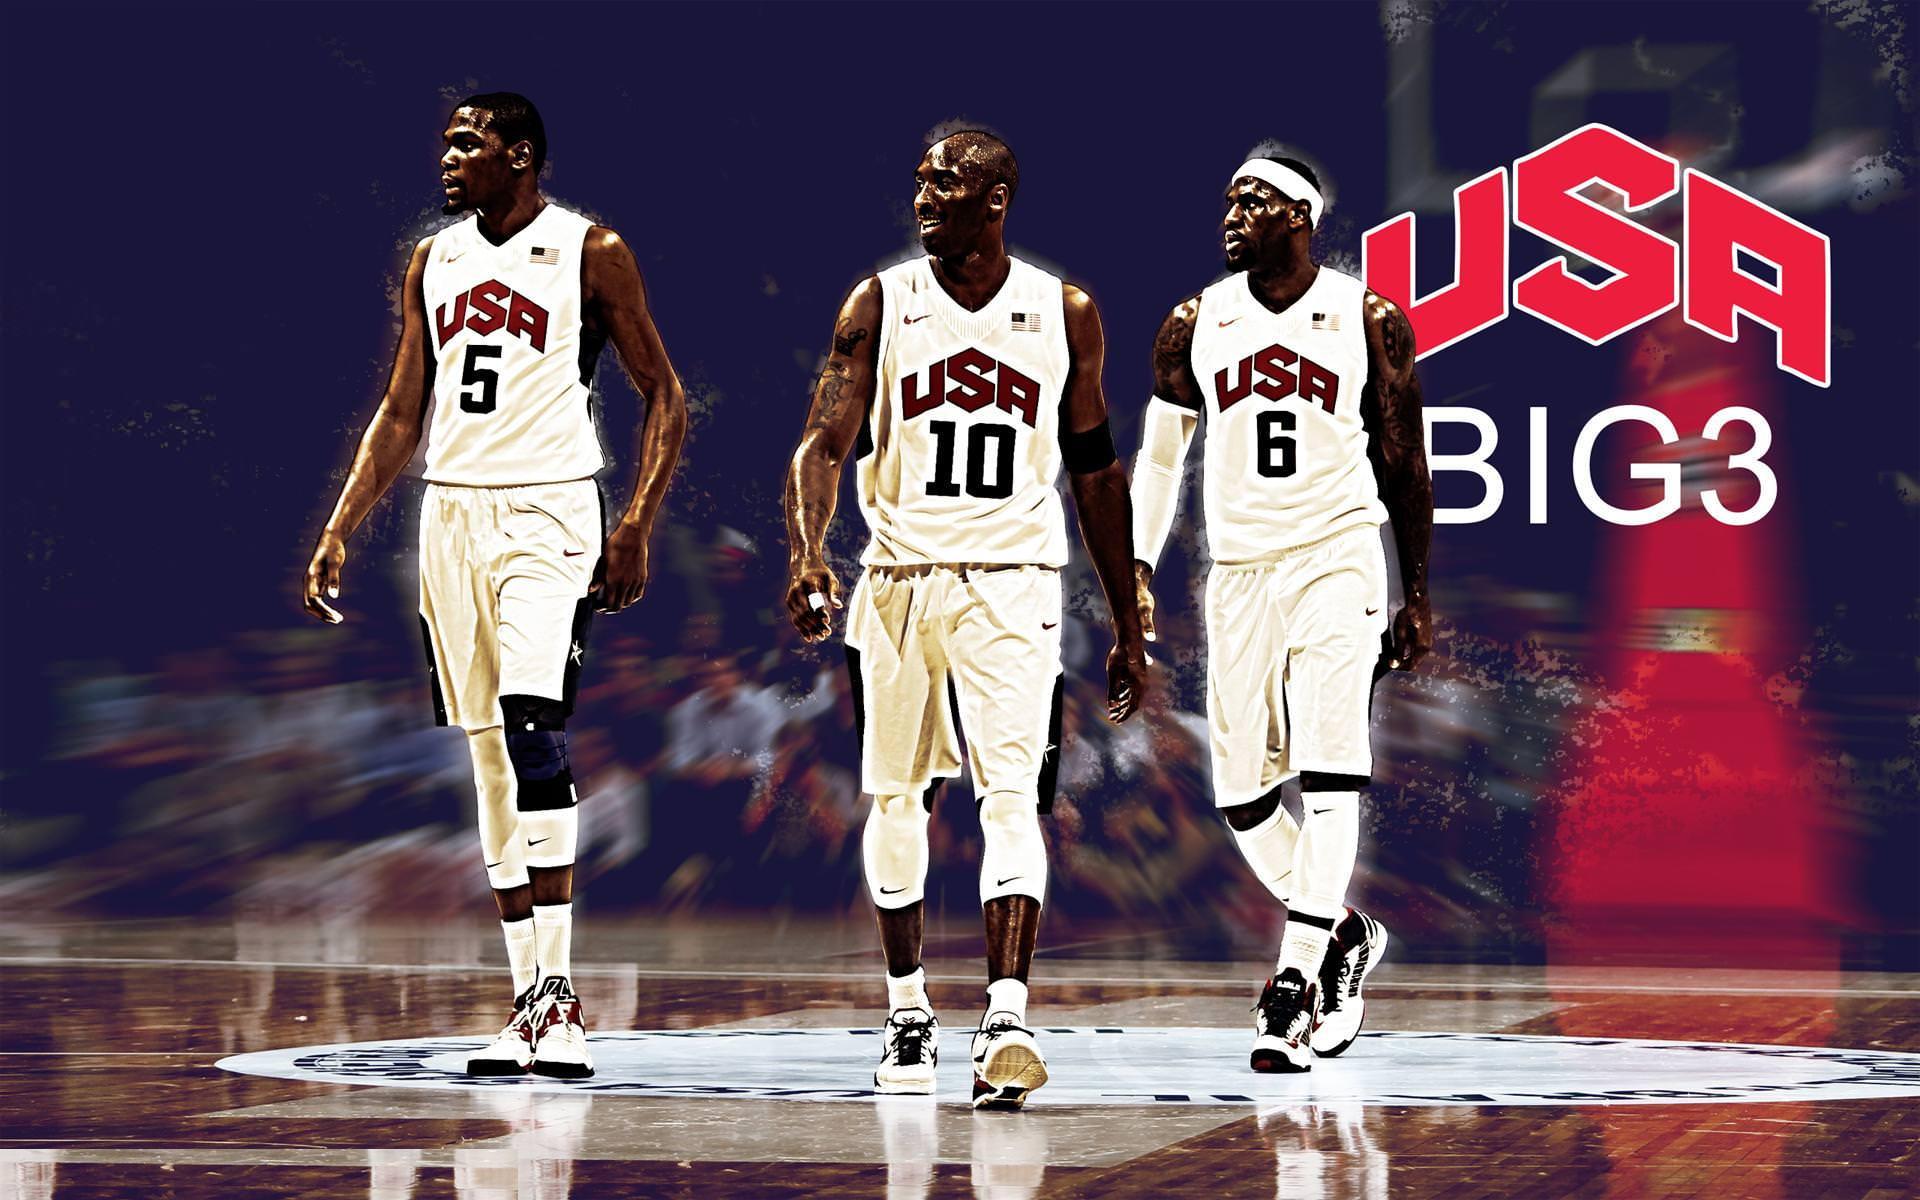 Nba Usa Basketball Team Usa Basketball Player Usa Basketball Image